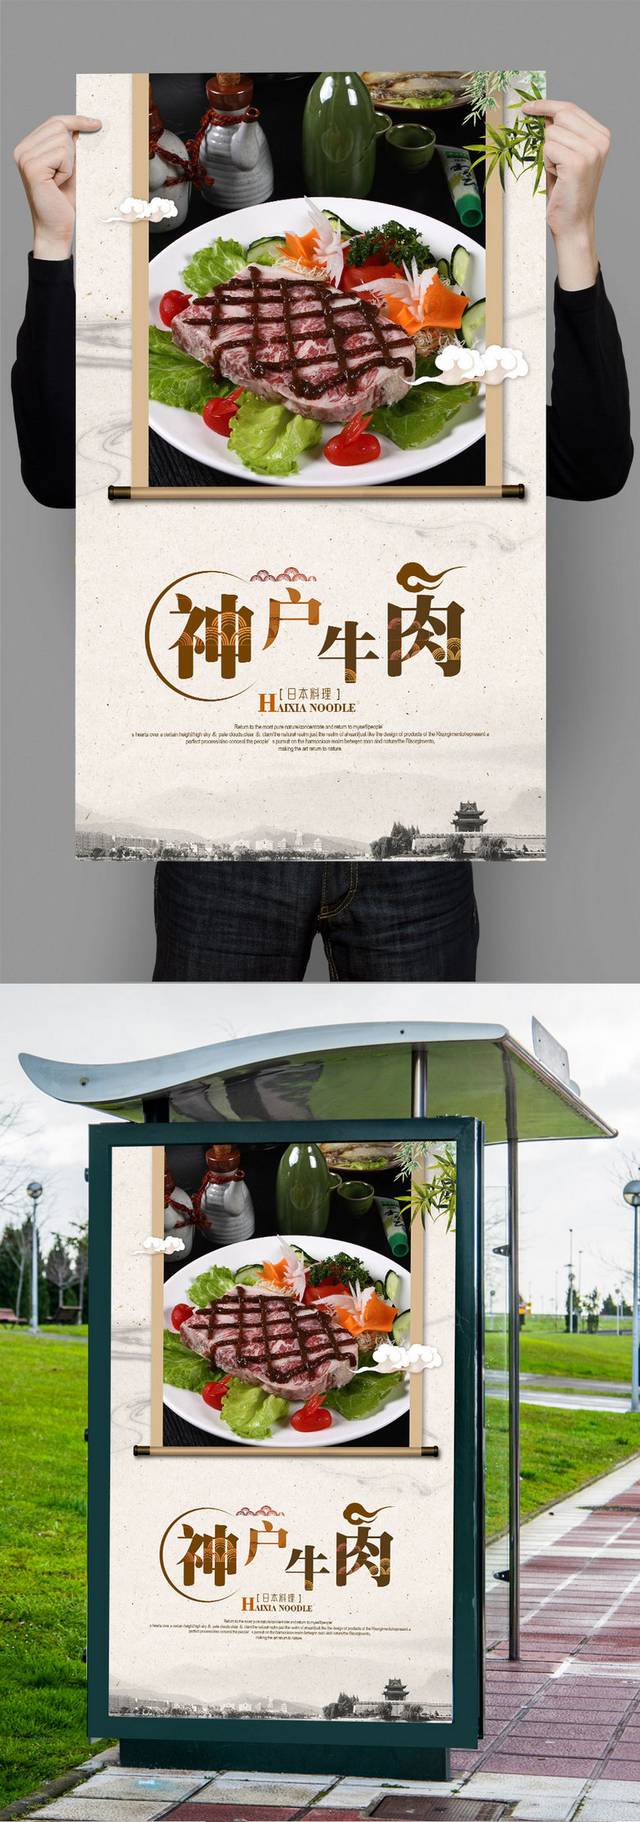 餐馆神户牛肉文化宣传海报设计